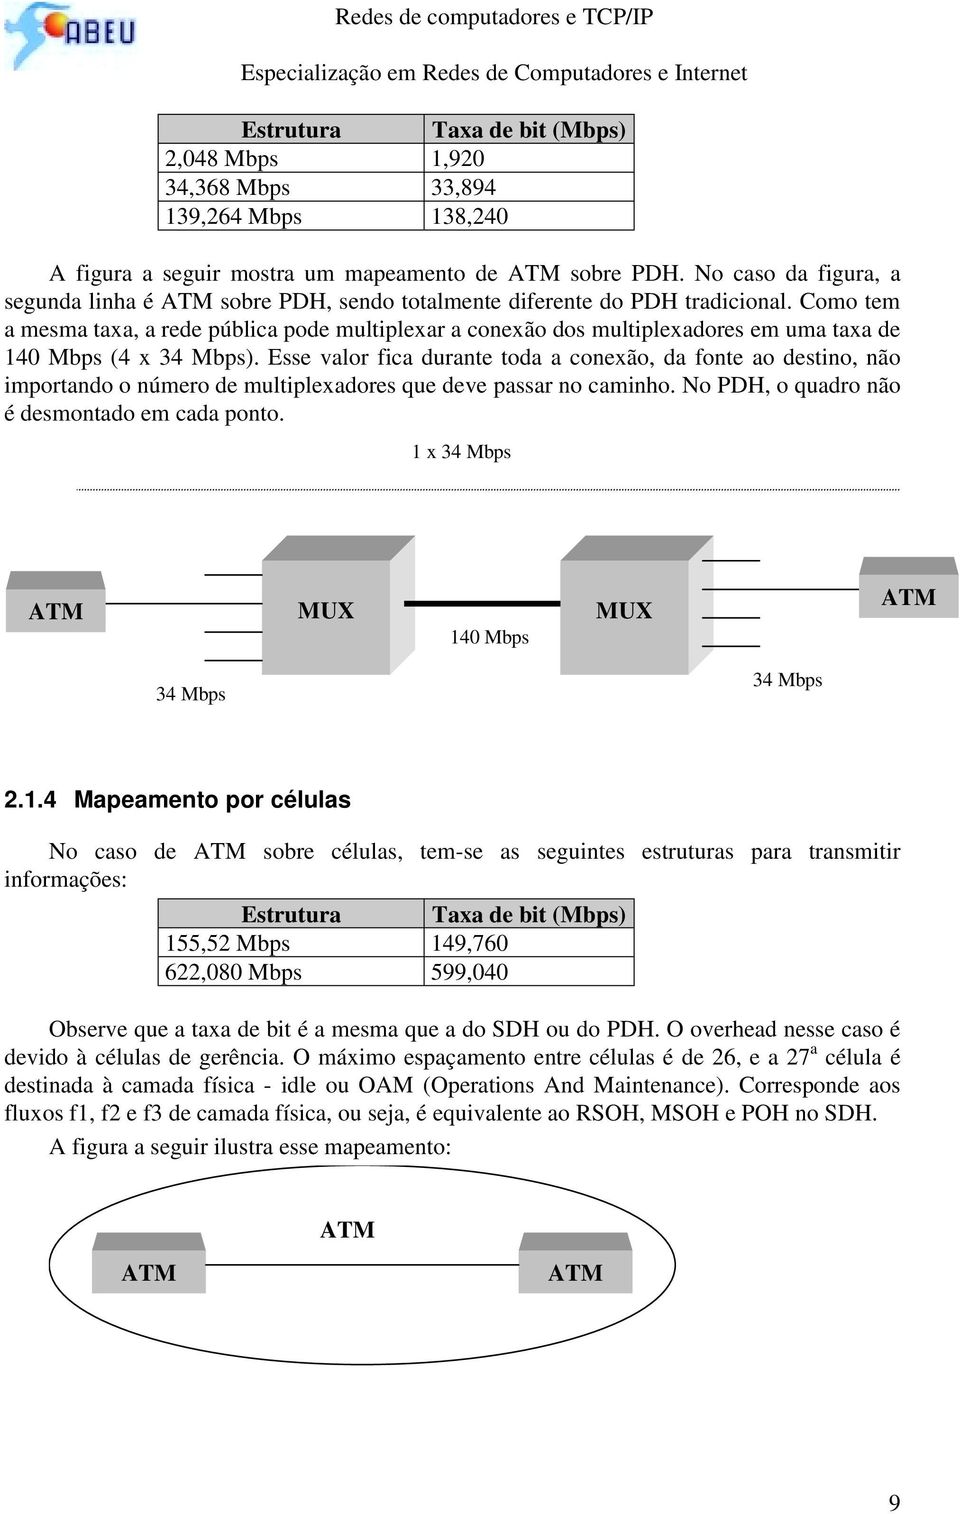 Como tem a mesma taxa, a rede pública pode multiplexar a conexão dos multiplexadores em uma taxa de 140 Mbps (4 x 34 Mbps).